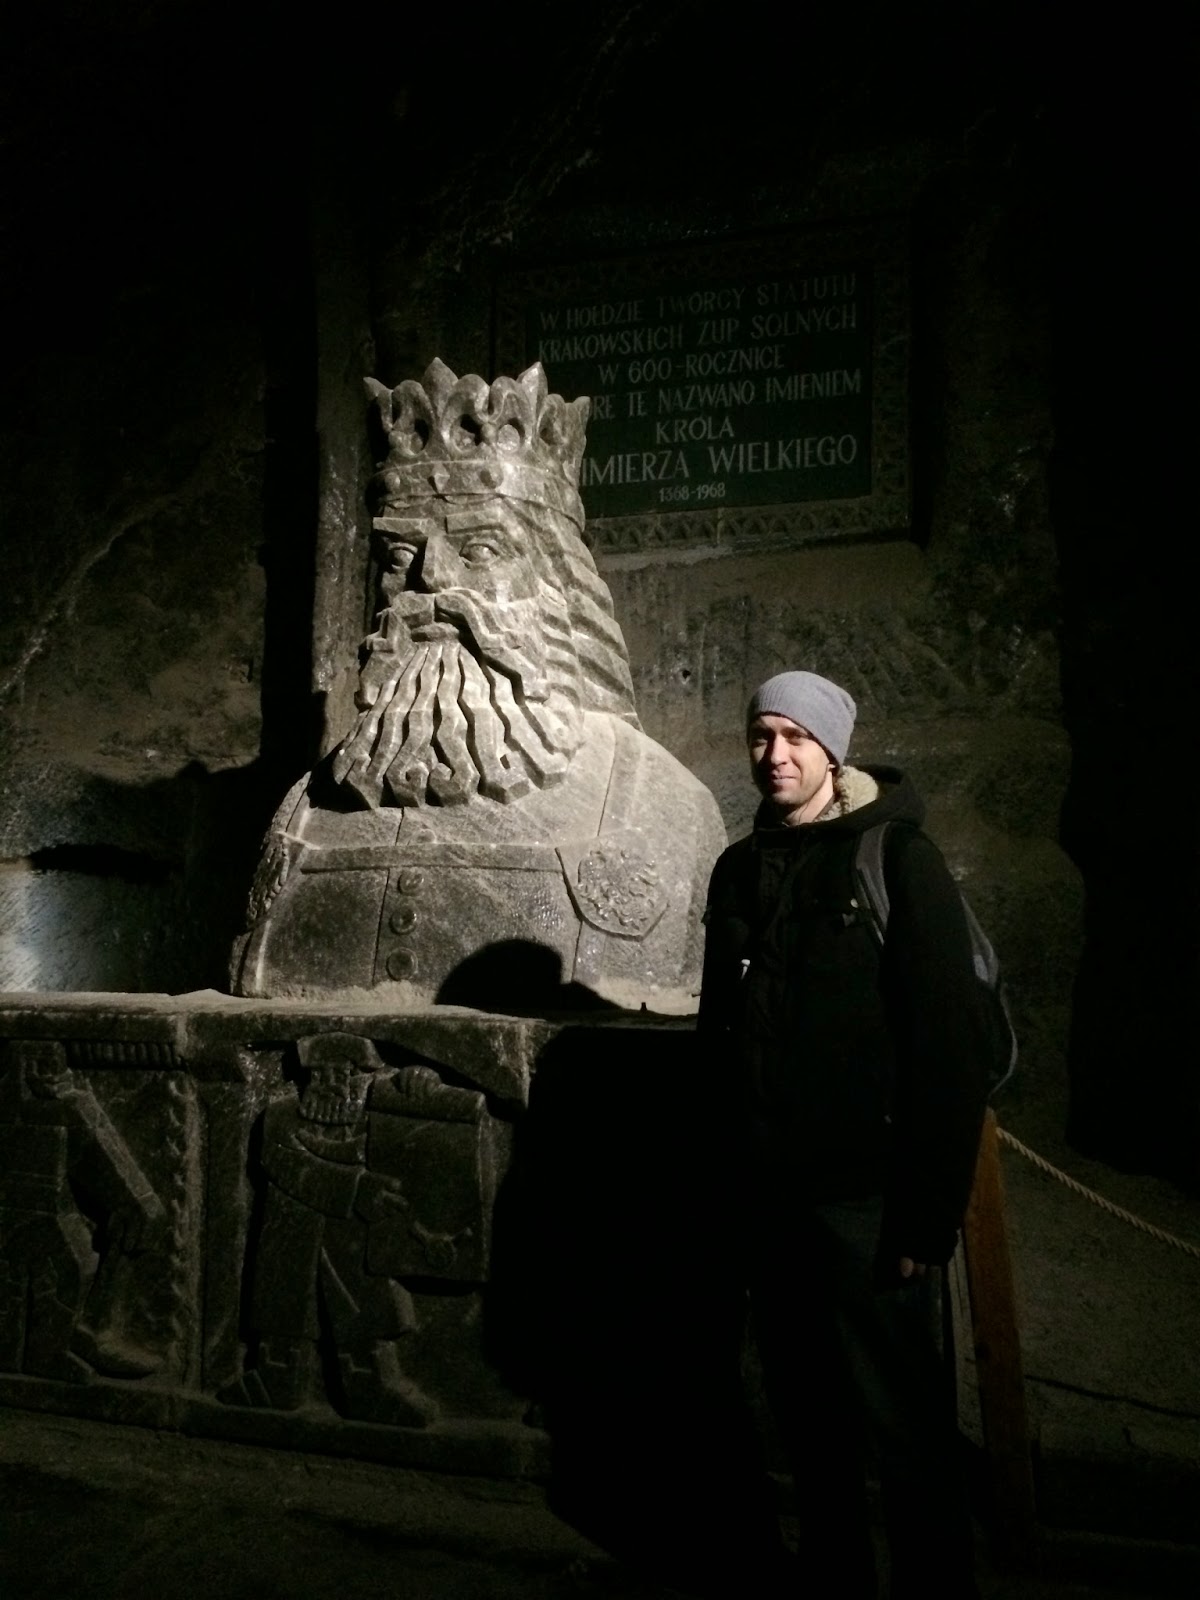 соляная шахта Величка под Краковом